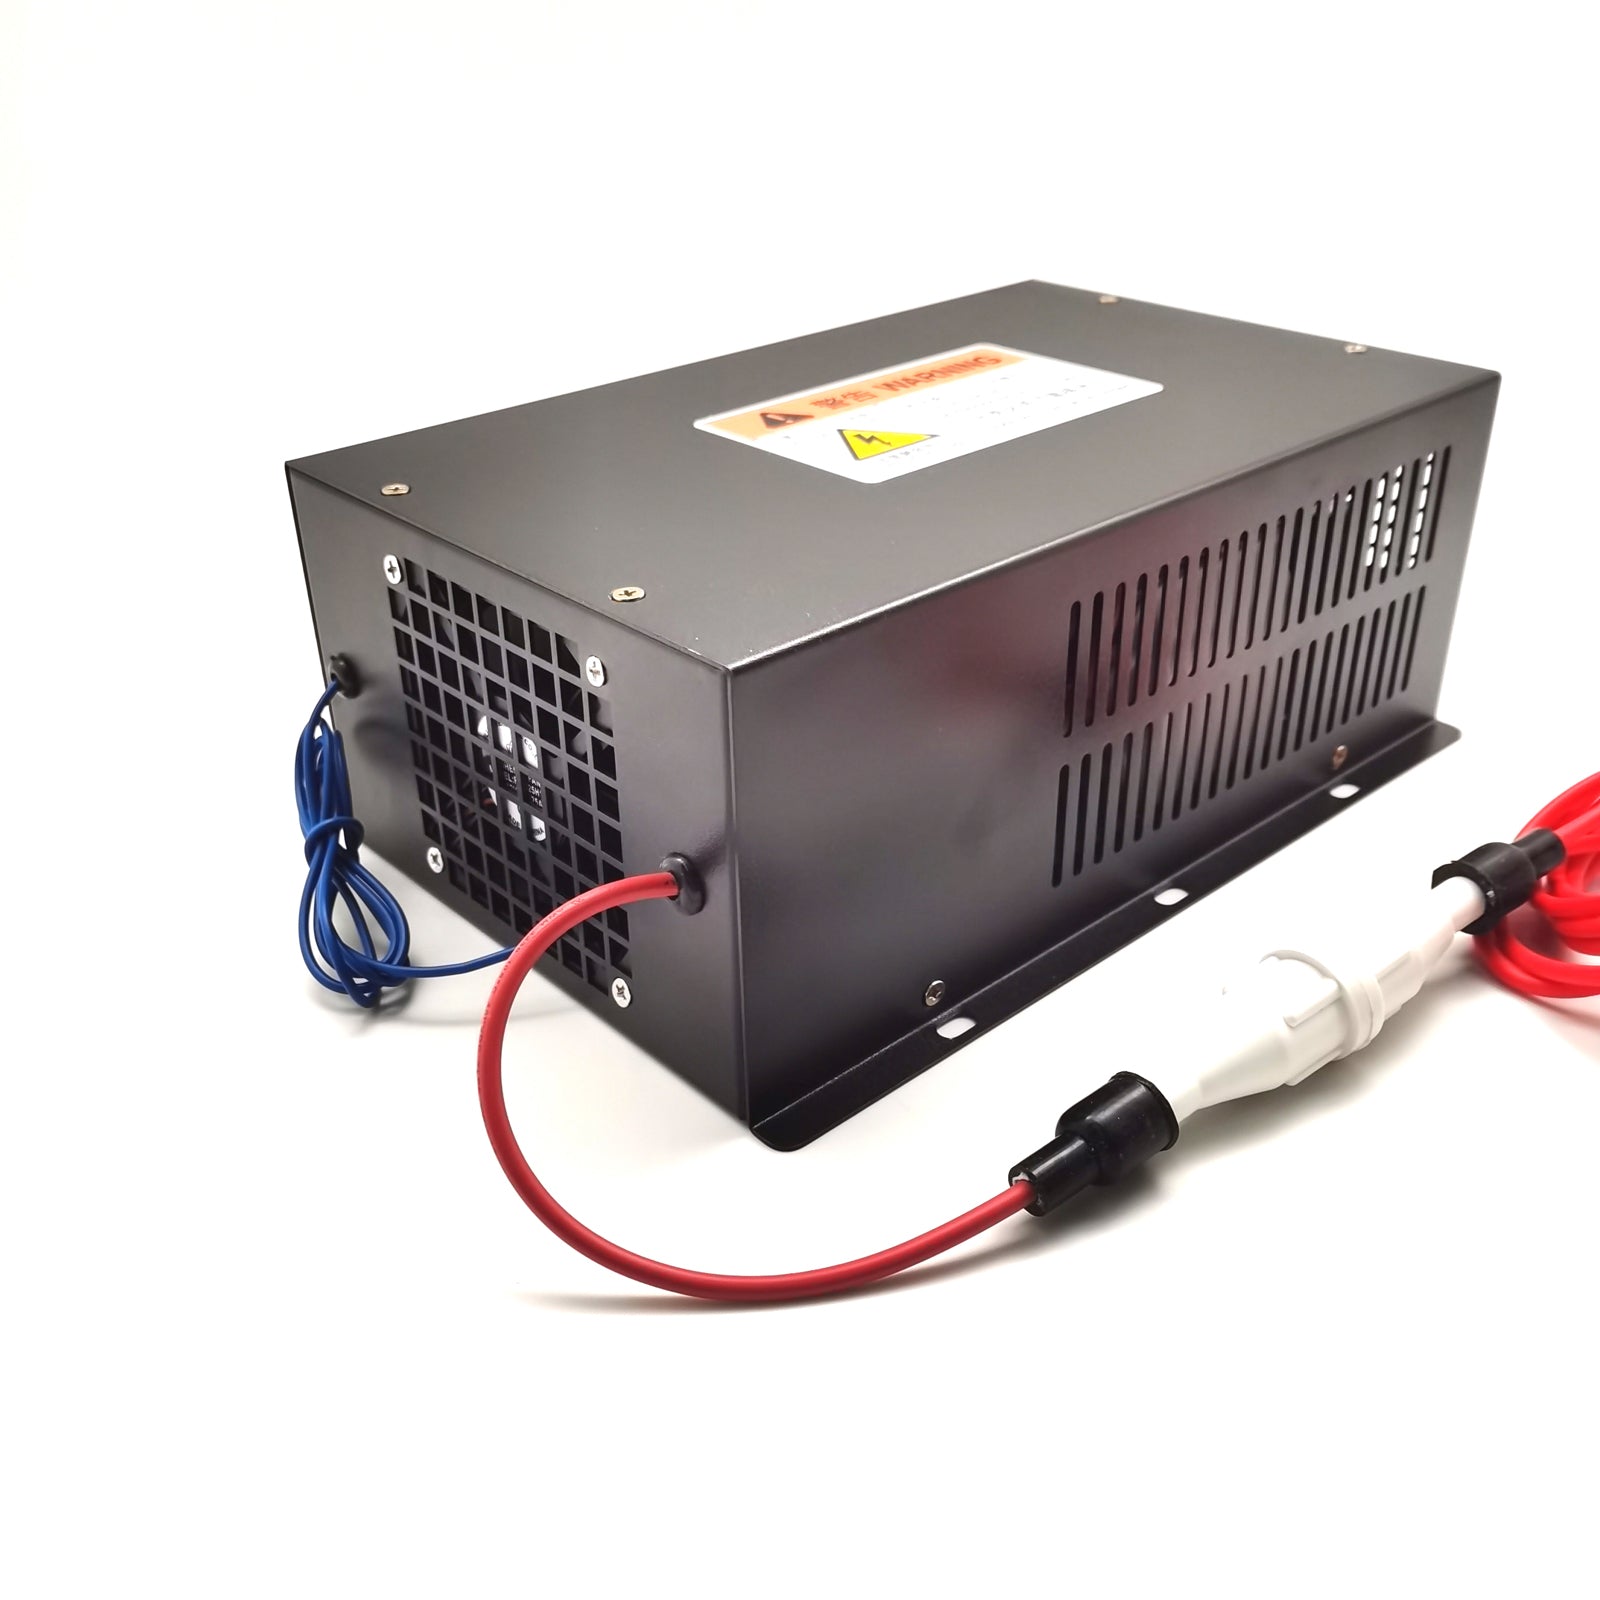 MYJG80 CO2-Laser-Netzteil inklusive LED-Anzeige für 80-W-CO2-Laserröhre